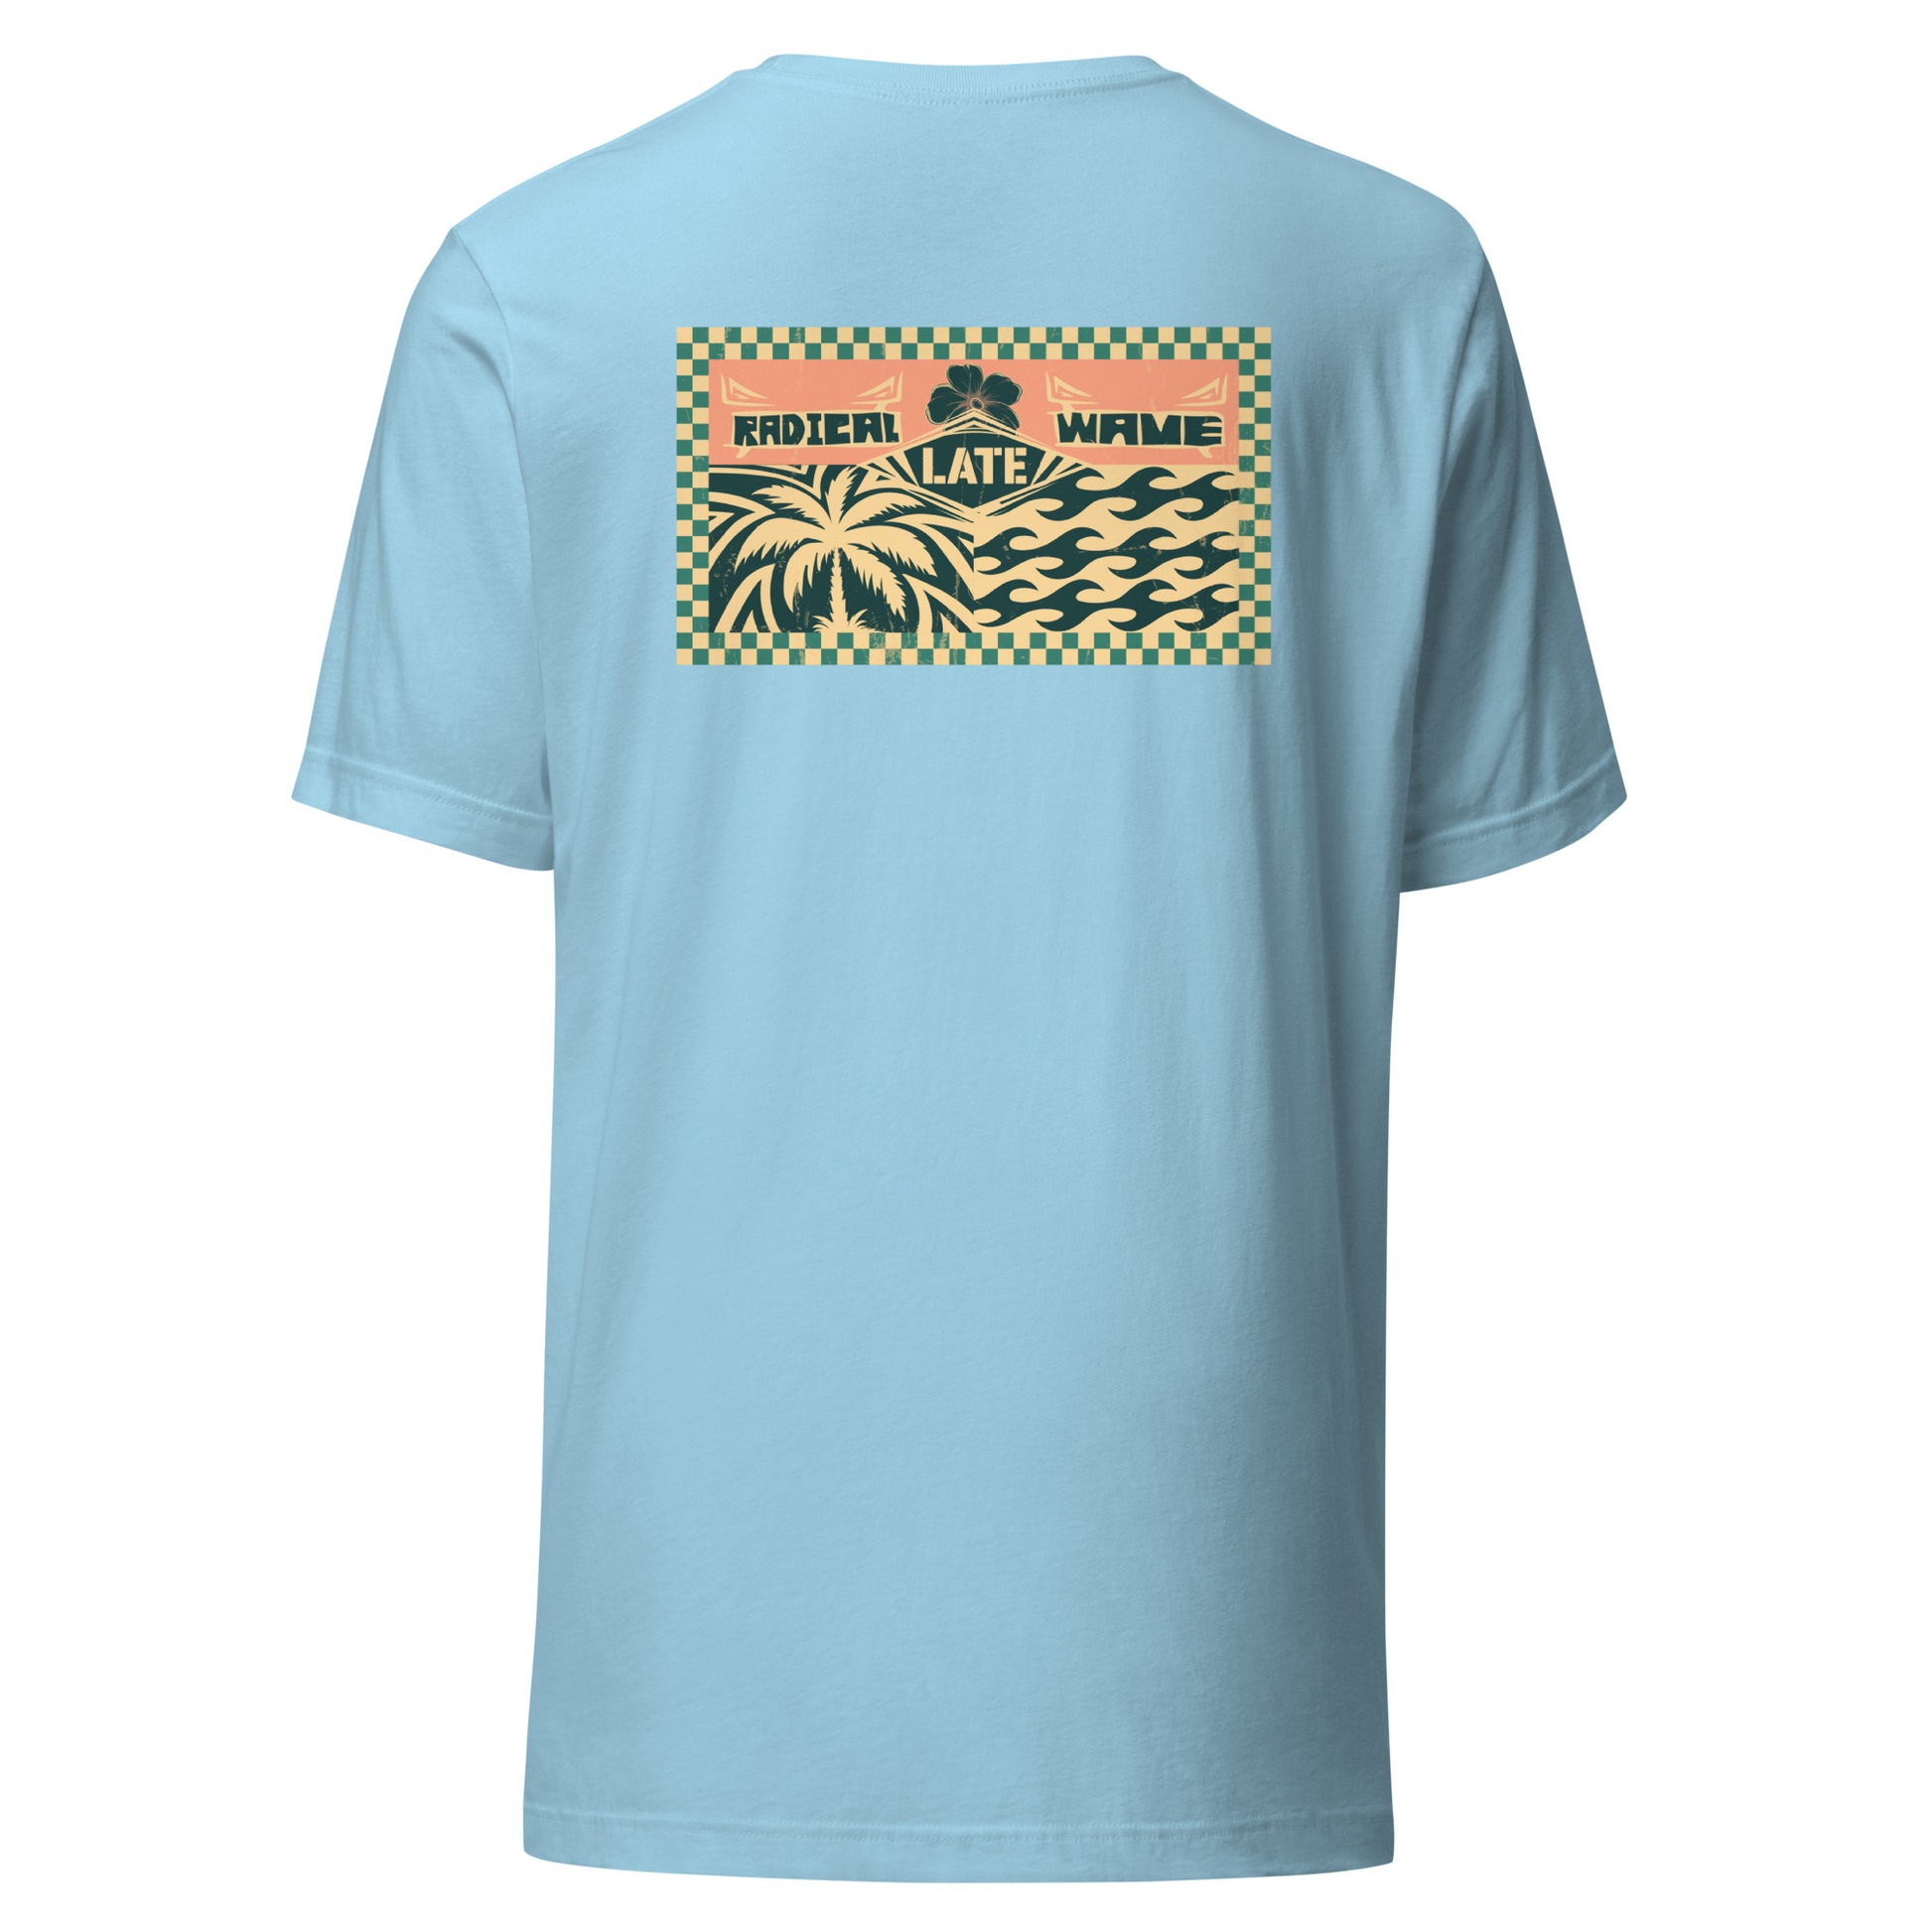 T-shirt rétro surfing radical wave, palmiers et vagues qui tubes, damier et logo Late surfshop. Tee-shirt unisexe de dos bleu océan